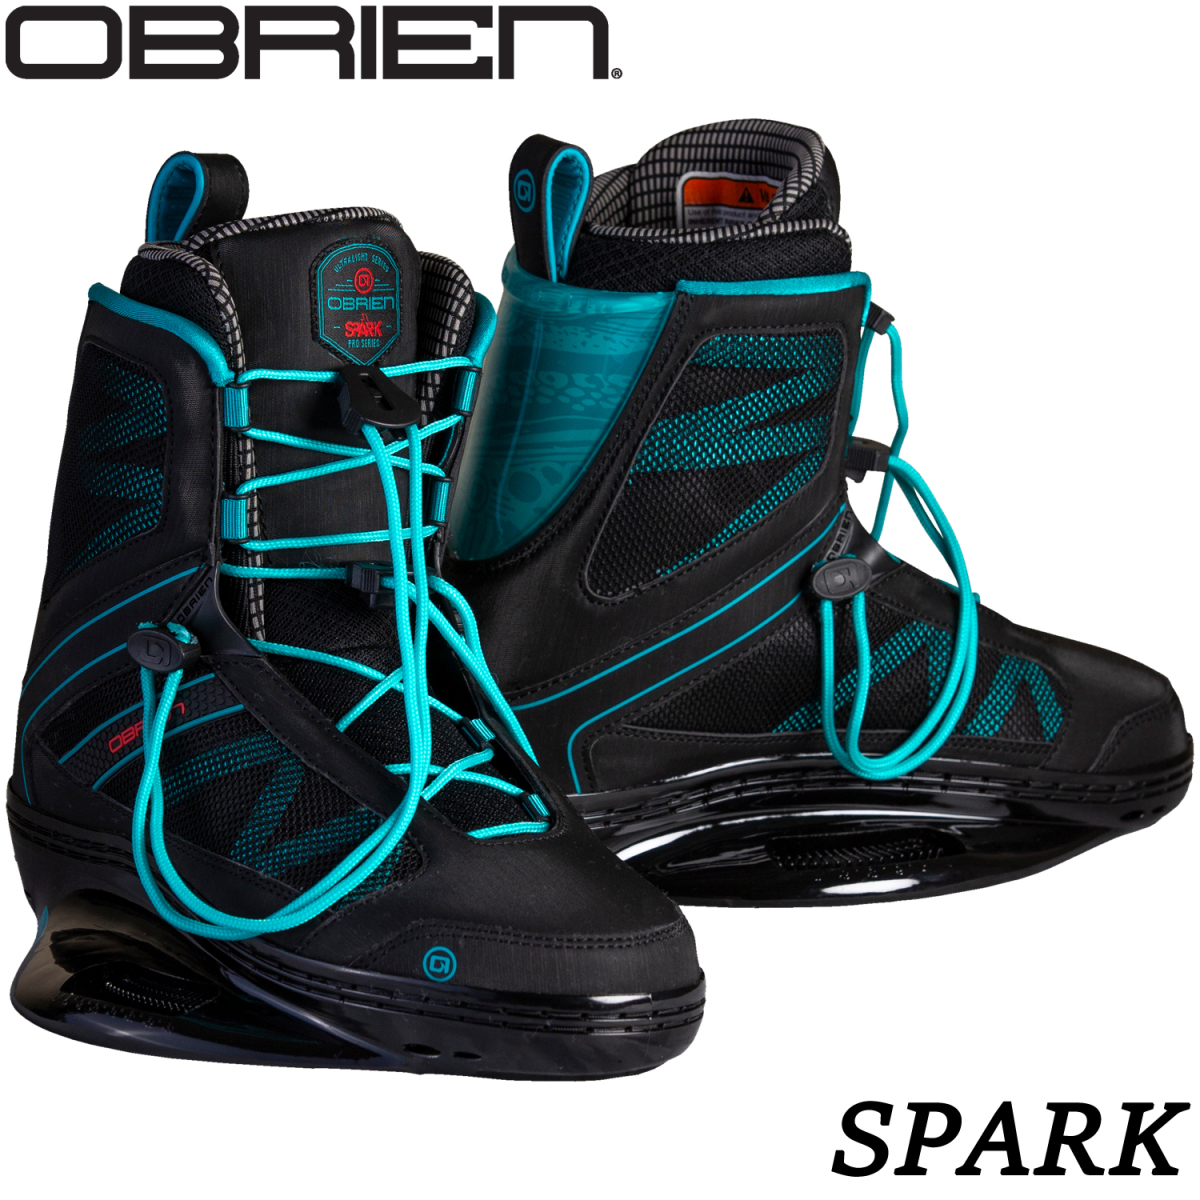  вейкбординг крепления ботинки OBRIENoblaienSPARK Spark 